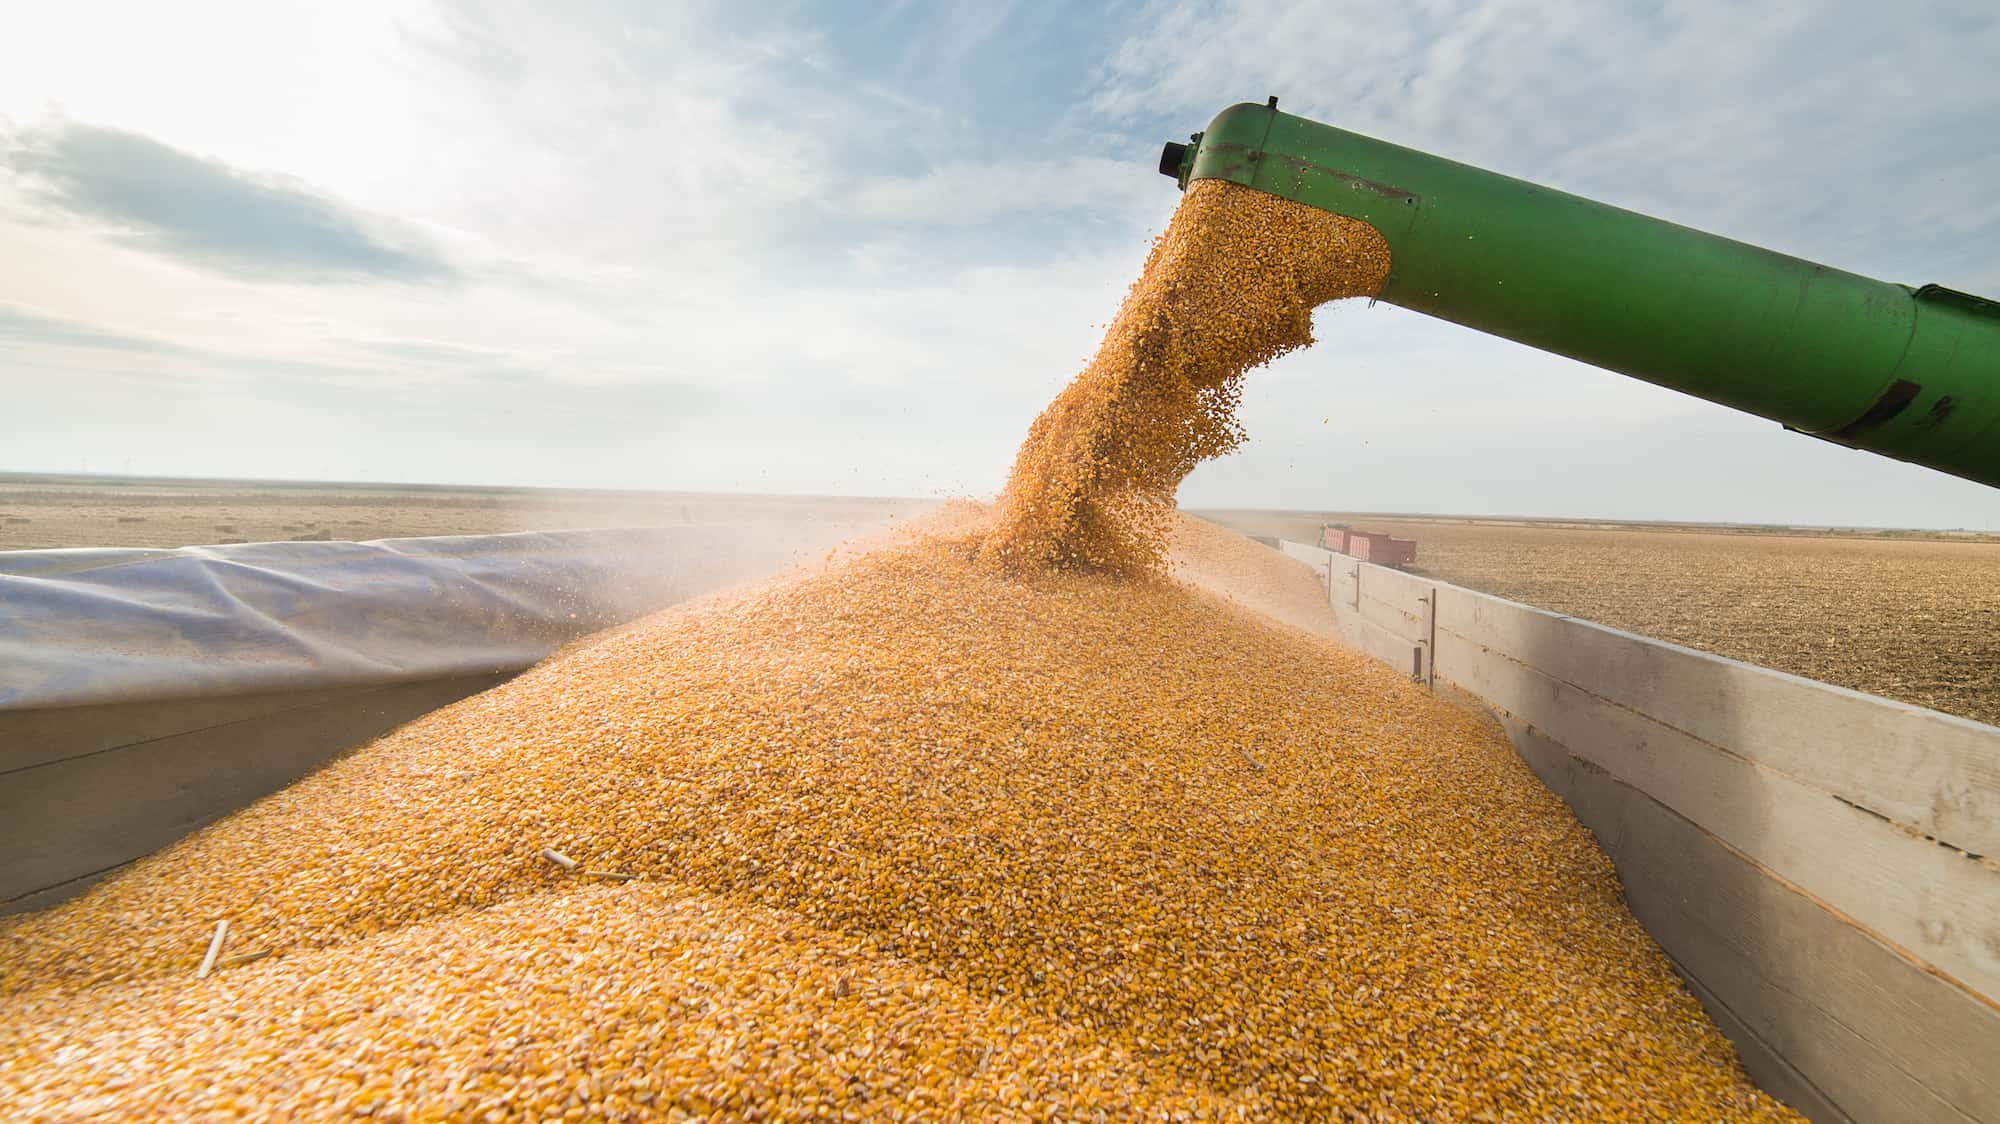 Казахстан снимает ограничения на экспорт зерна и муки